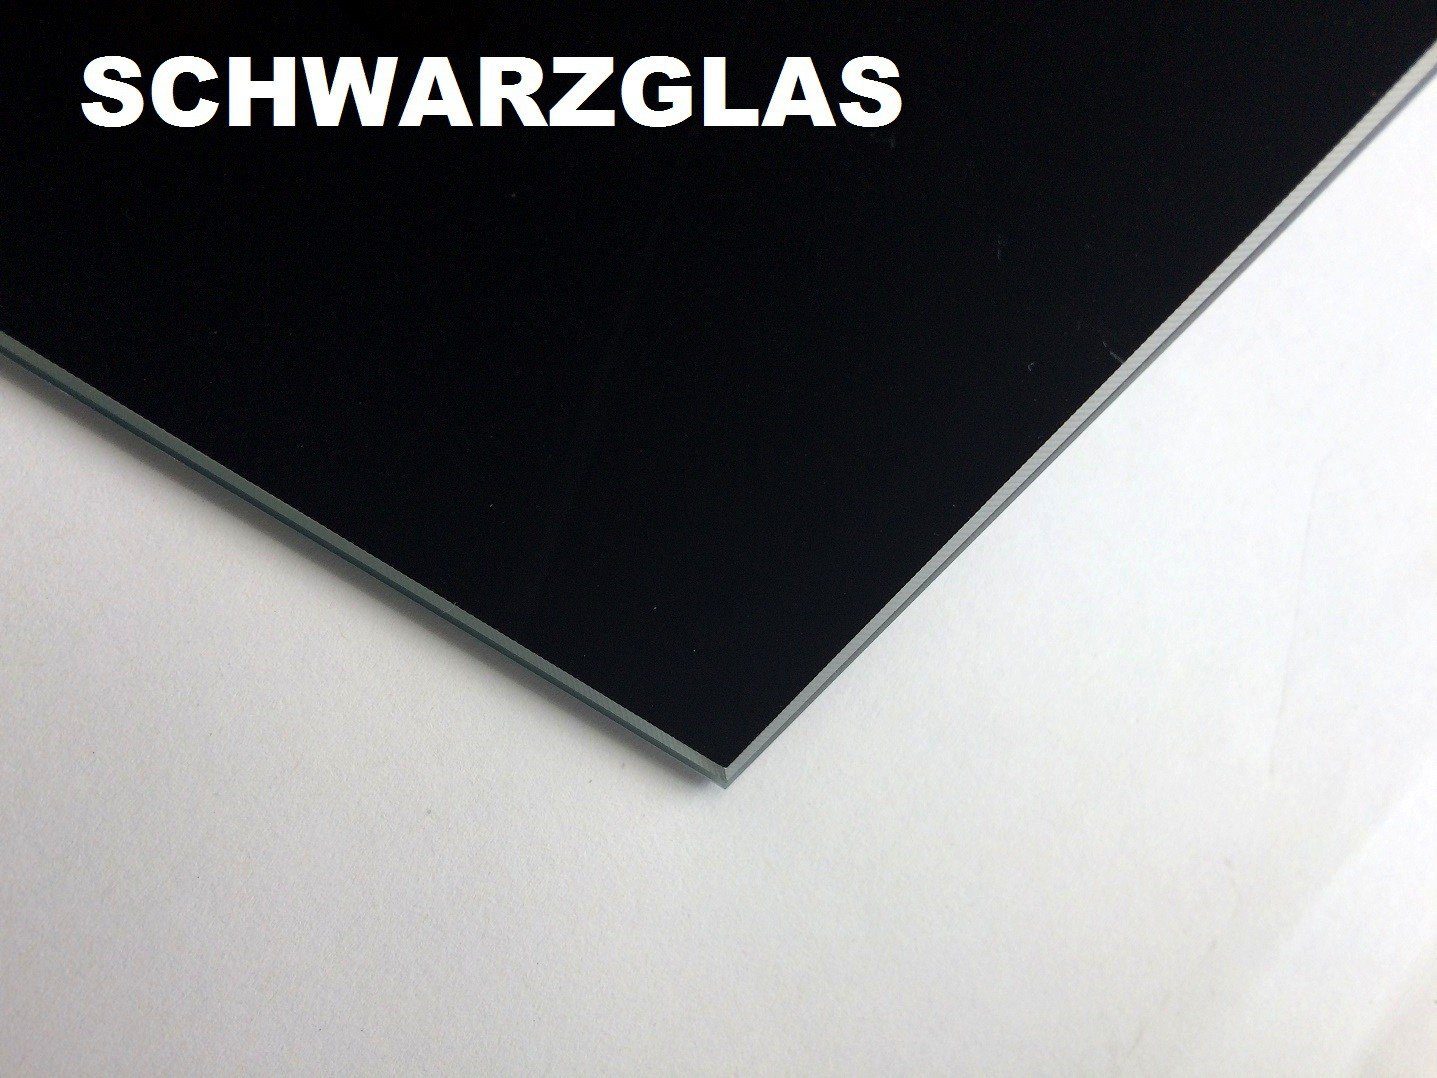 Getöntes Design Walnuss ausziehbar Nussbaum Couchtisch / Schwarzglas designimpex / Schwarzglas Nussbaum höhenverstellbar MN-3 Glas |